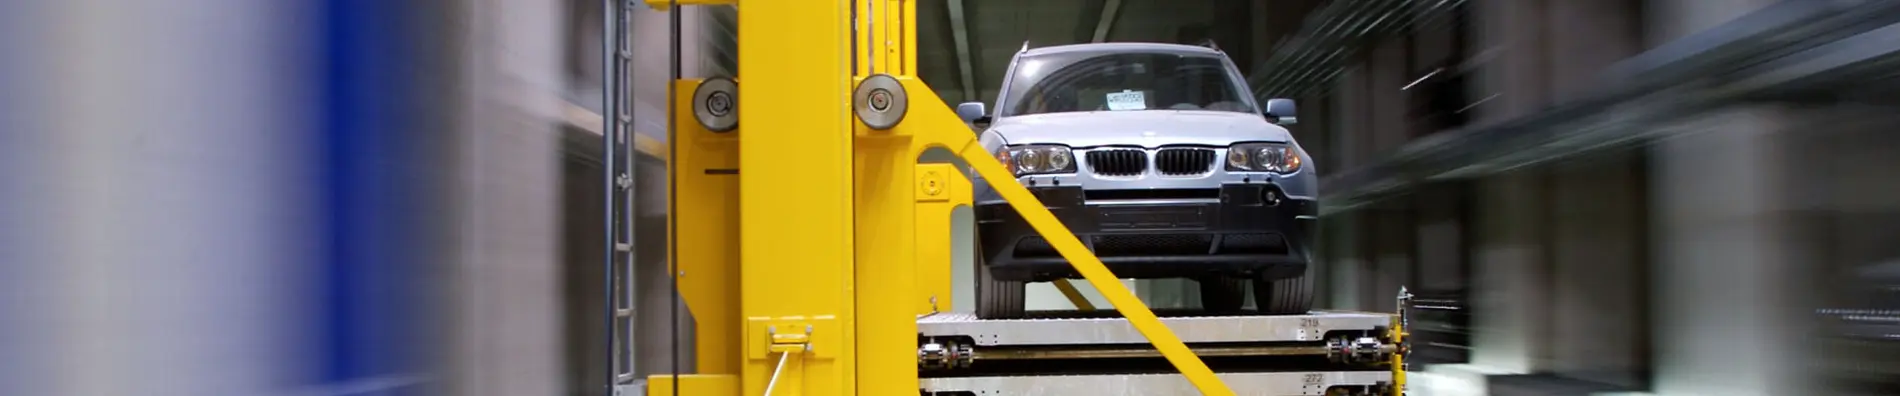 BMW-Welt Muenchen Tagesspeicher fuer Autos